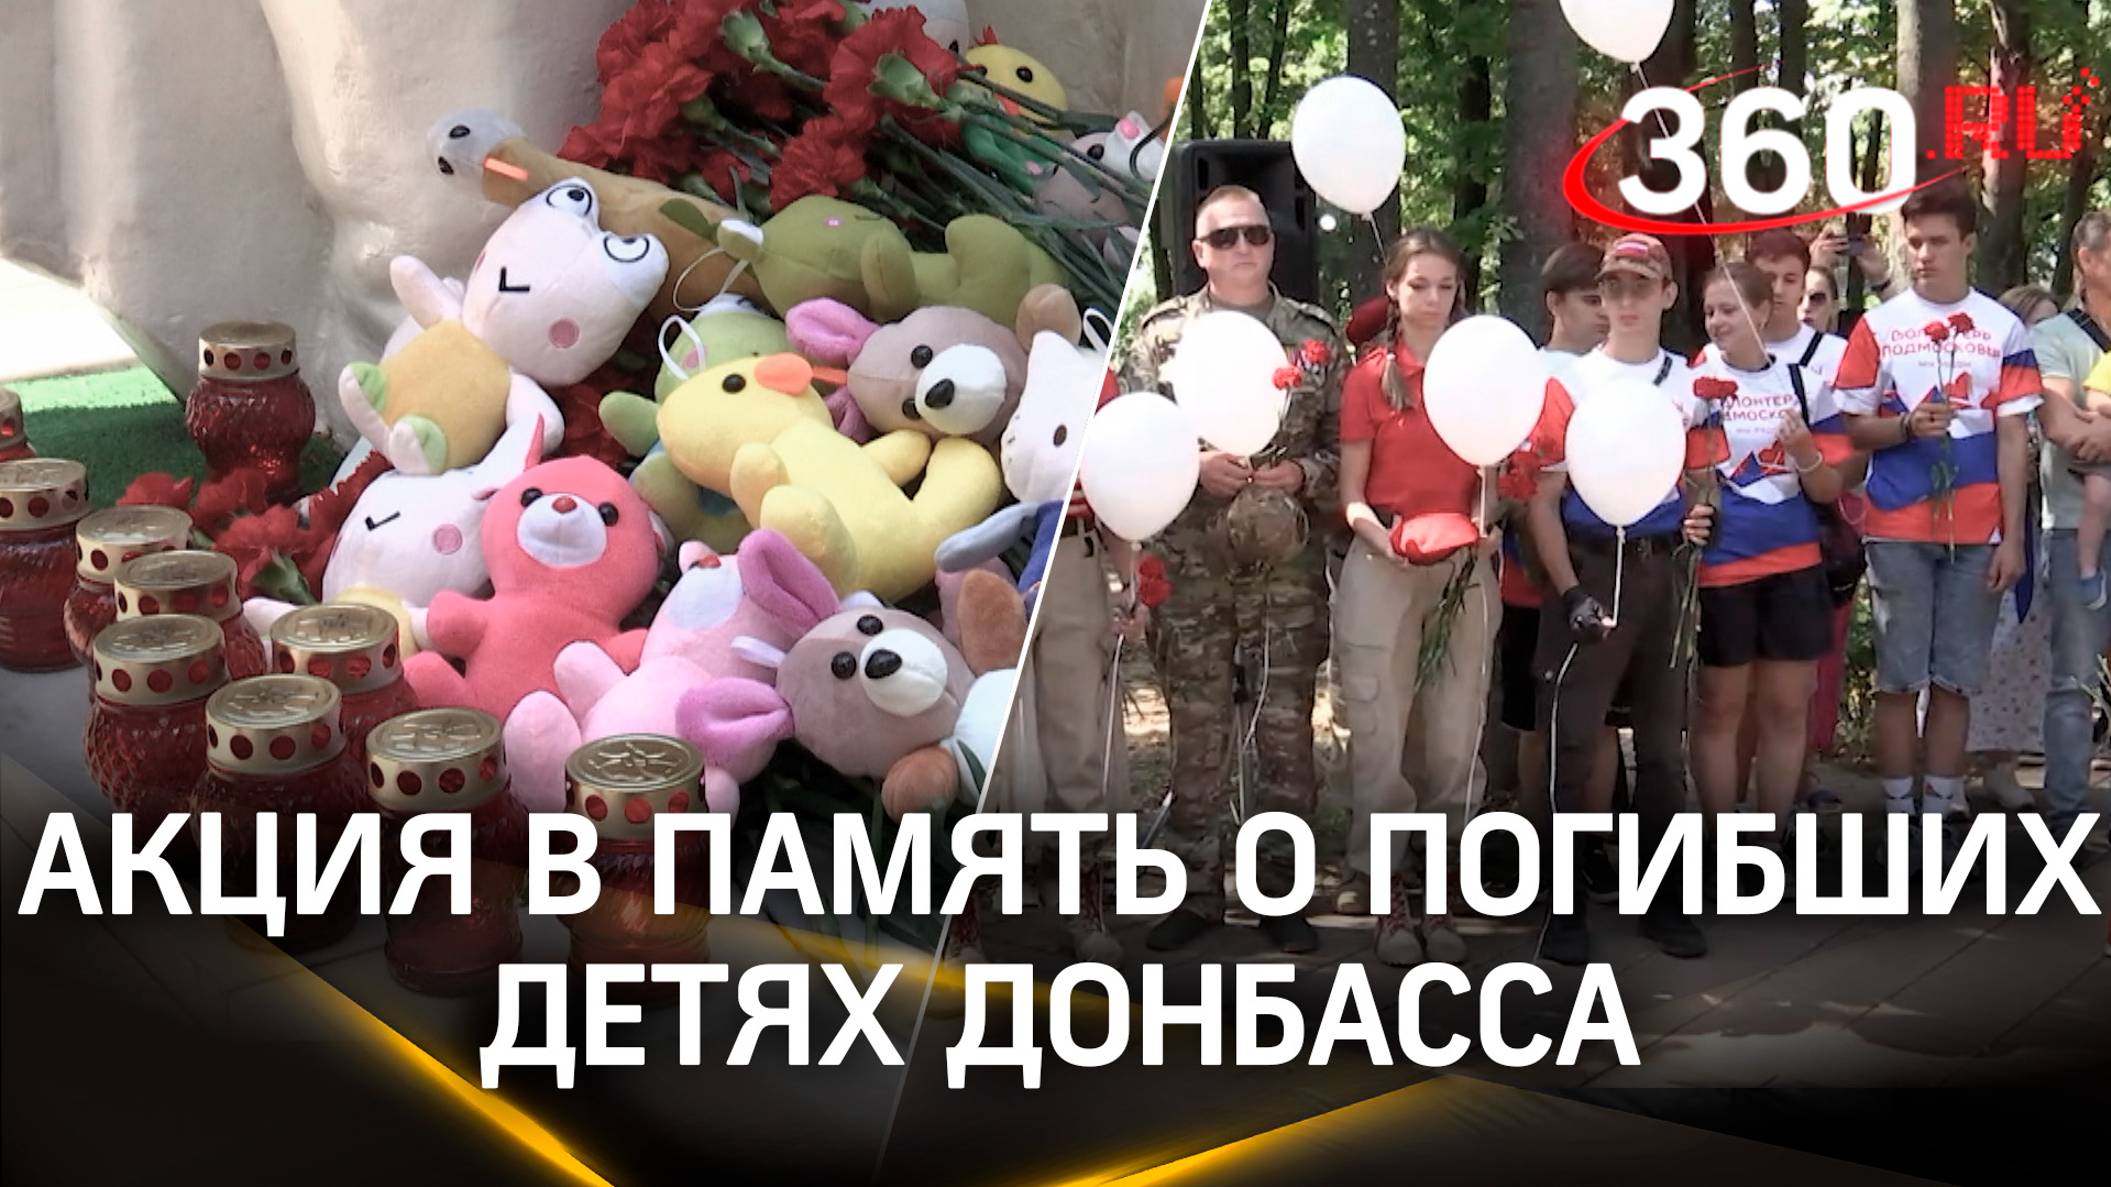 Сотни огней и цветов: акция-реквием в память о погибших на Донбассе детях в Подмосковье